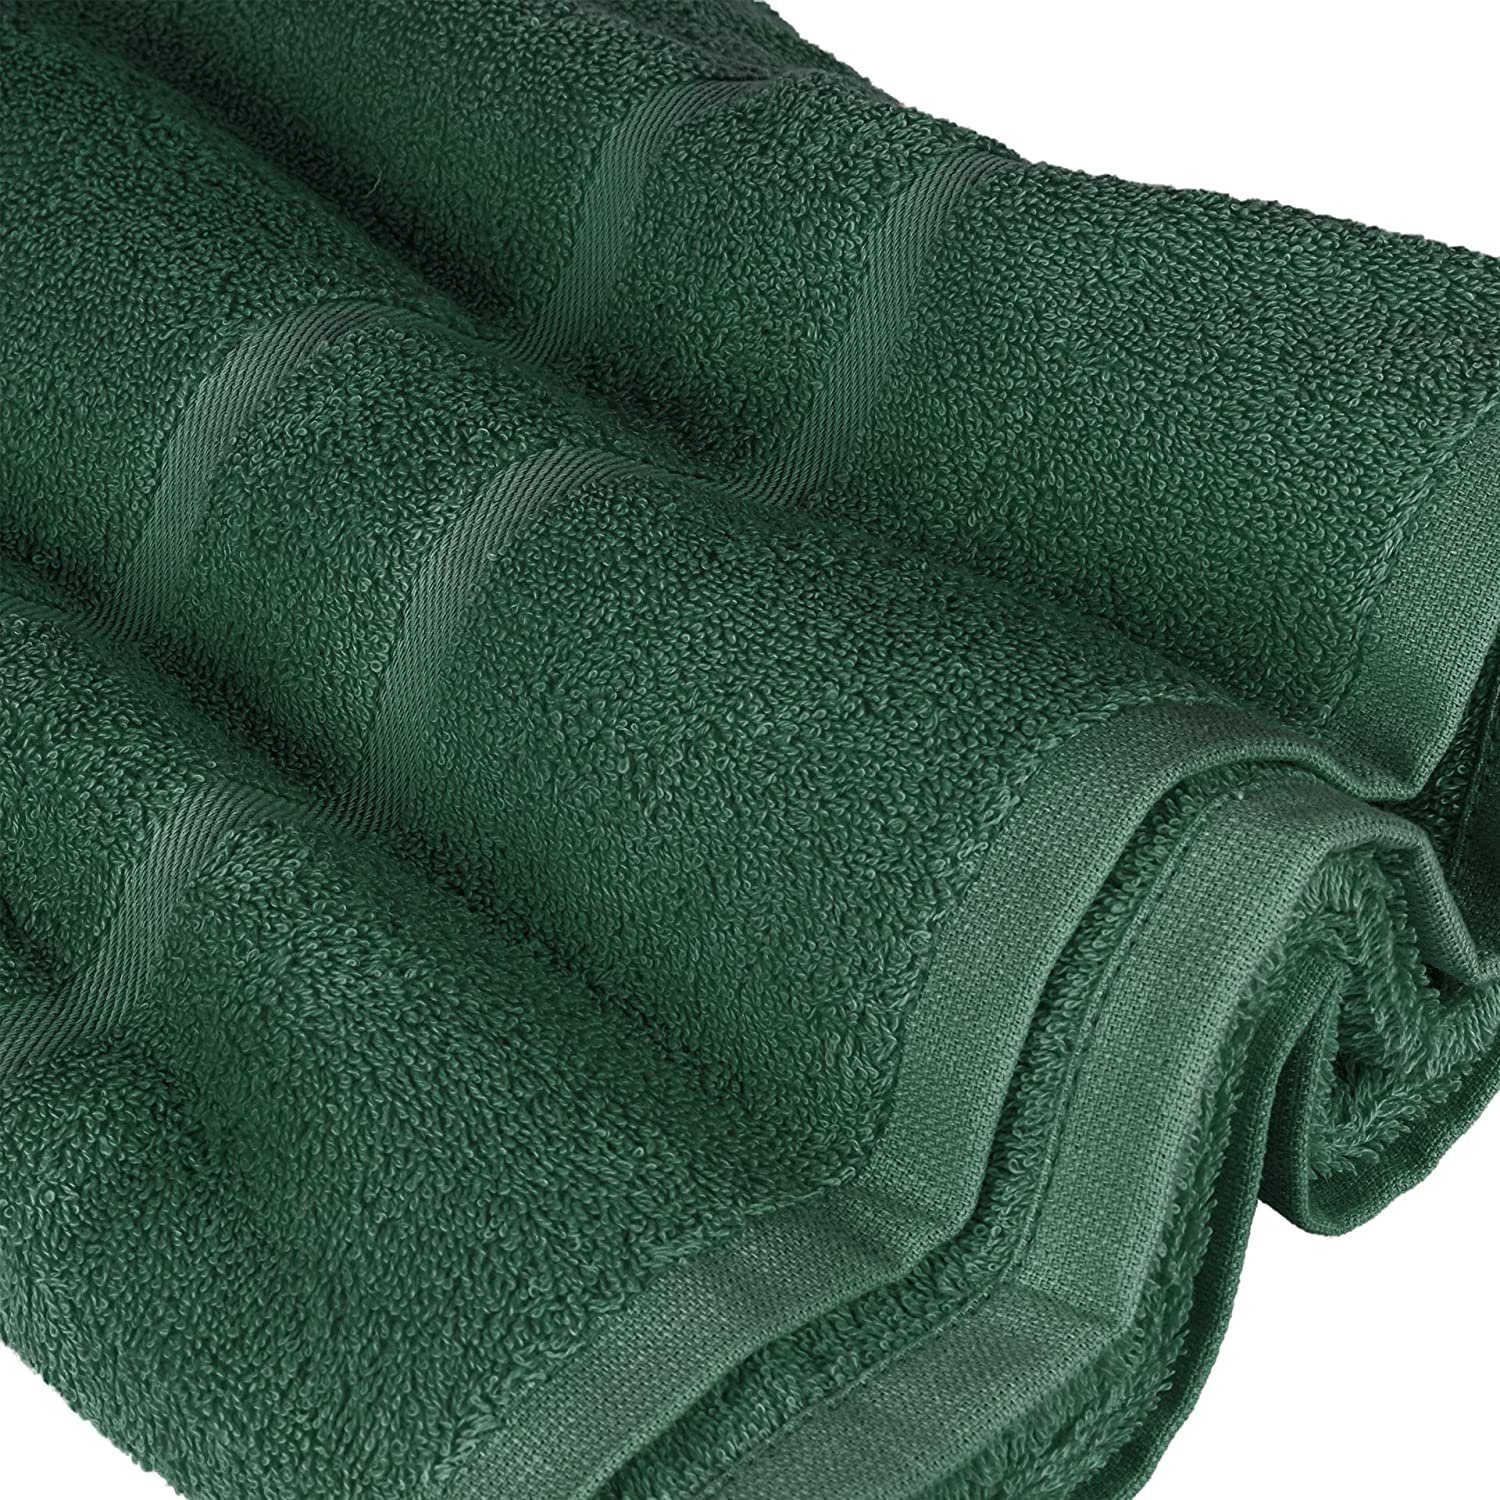 zur 100% Handtücher Duschtücher Handtuch in Wahl Badetücher Saunatücher Gästehandtücher StickandShine Baumwolle Dunkelgrün GSM 500